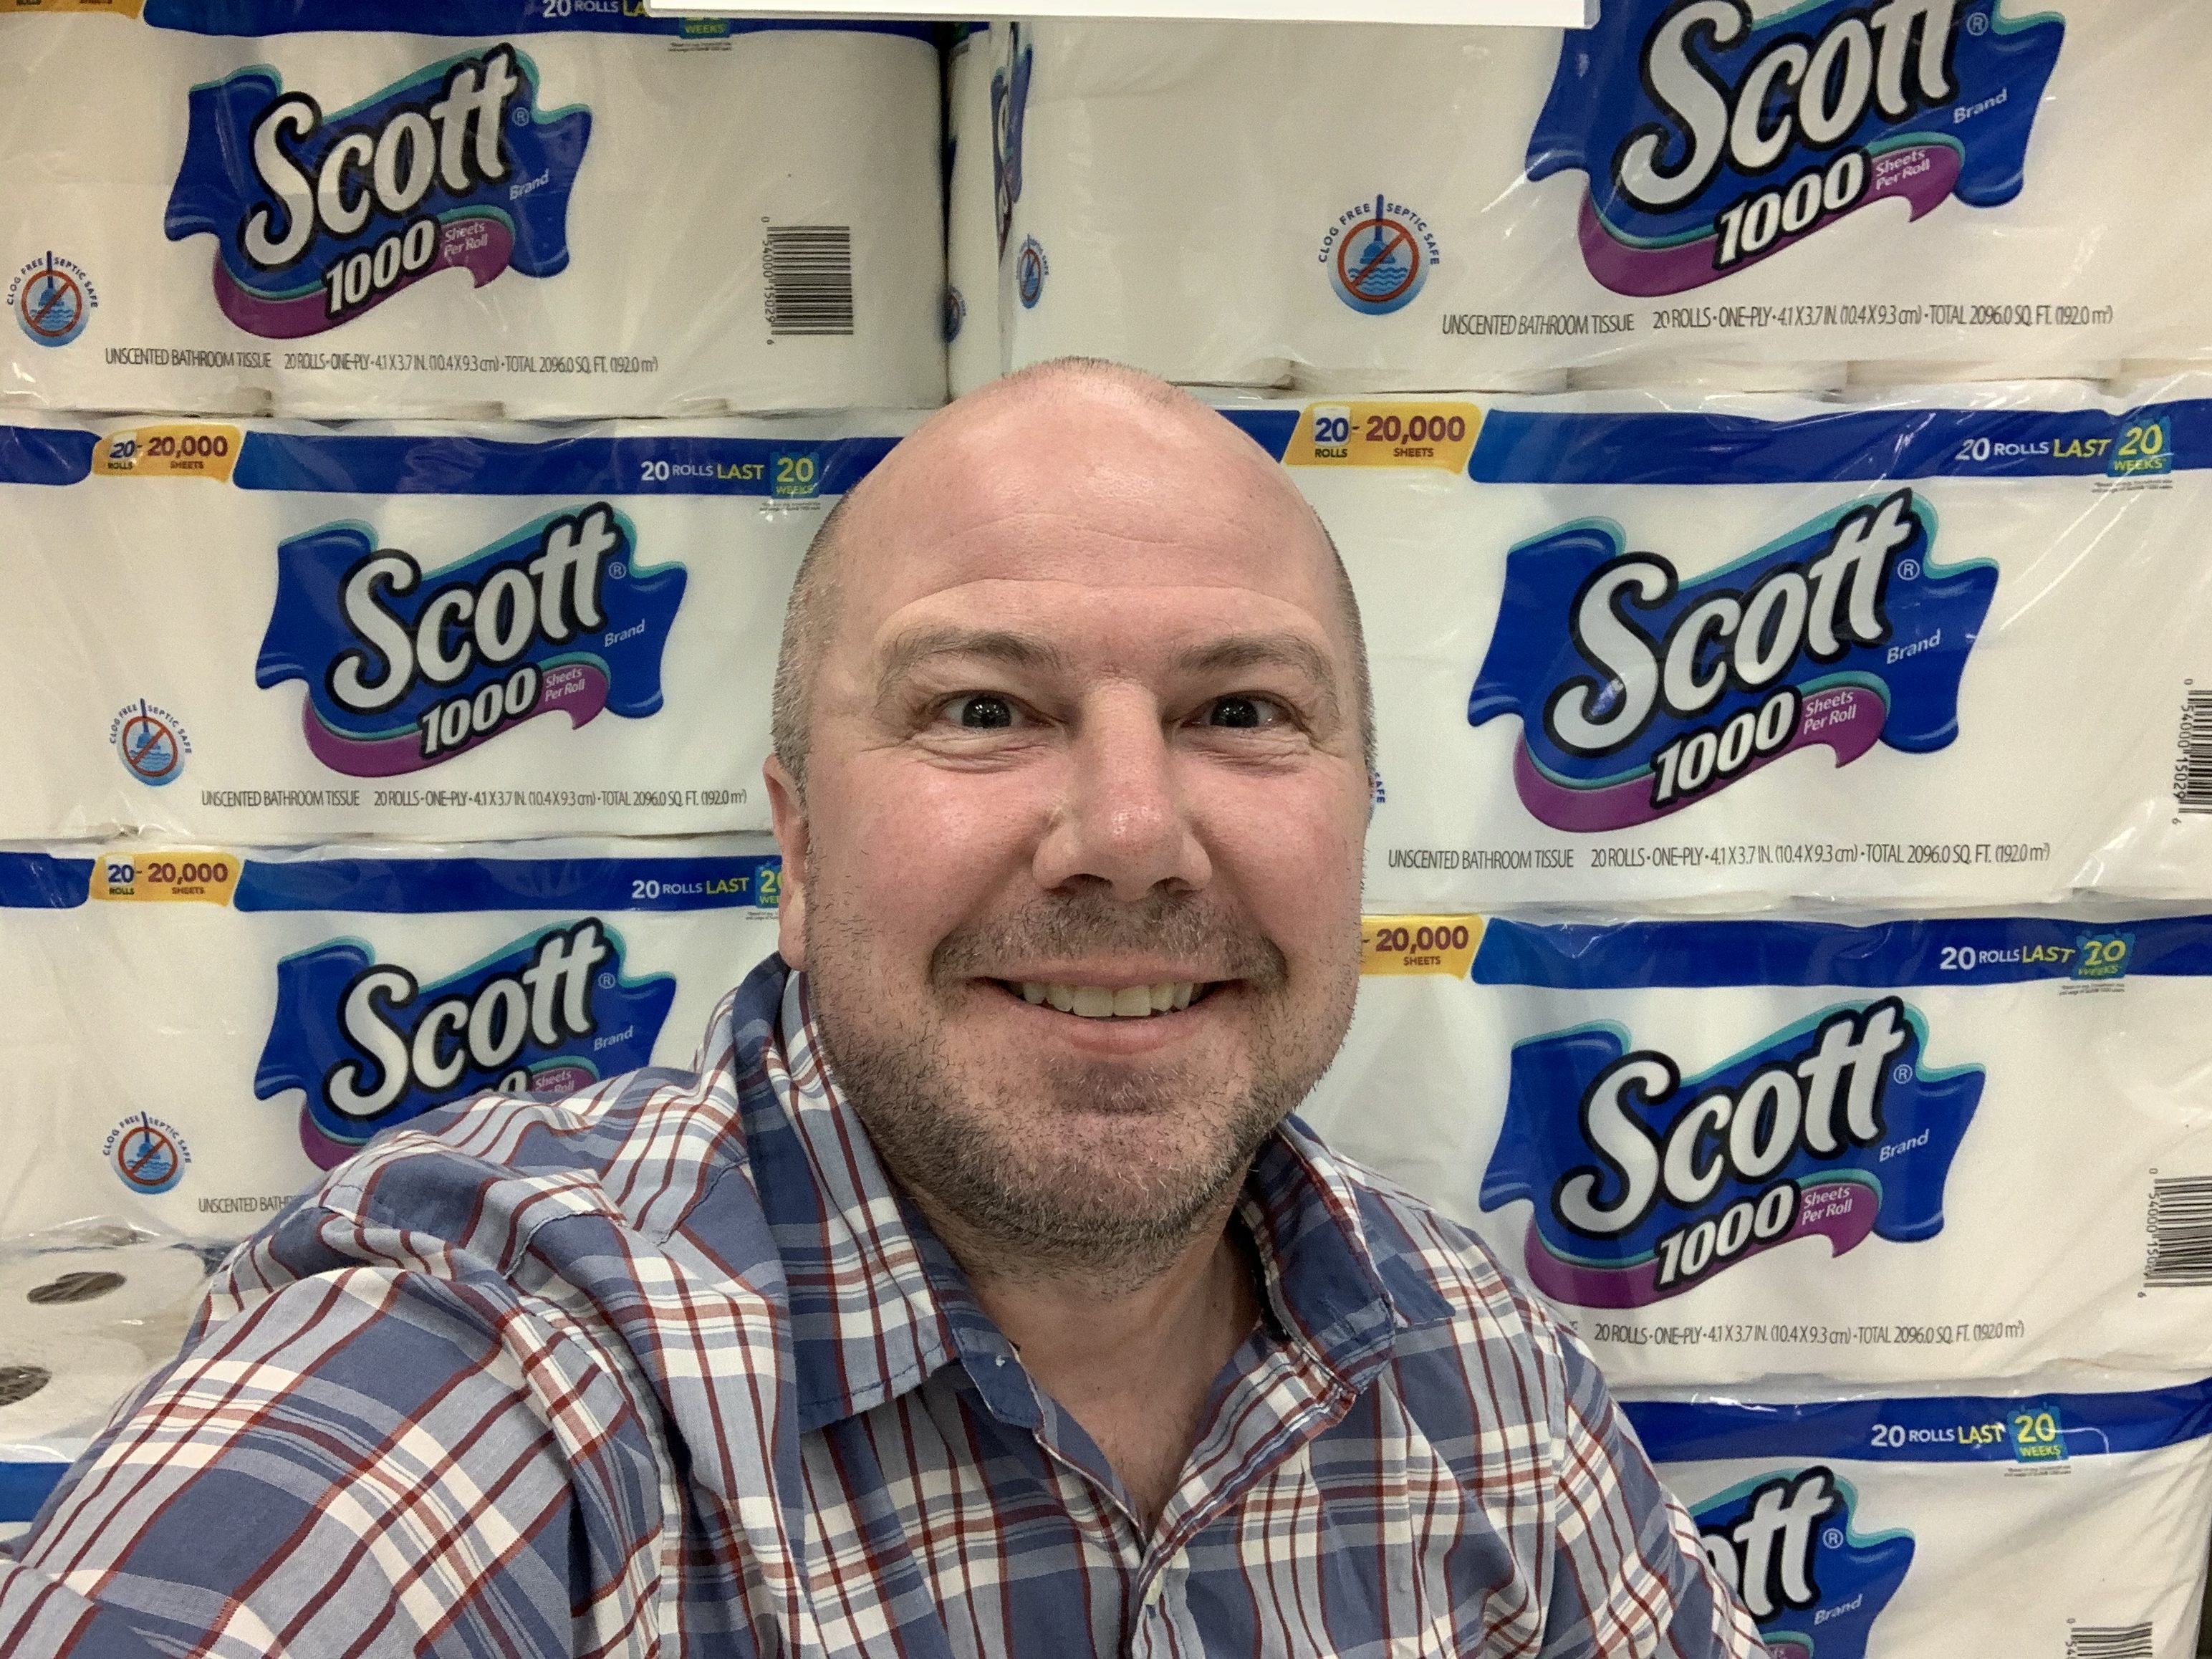 Target toilet paper aisle Lee April 2020